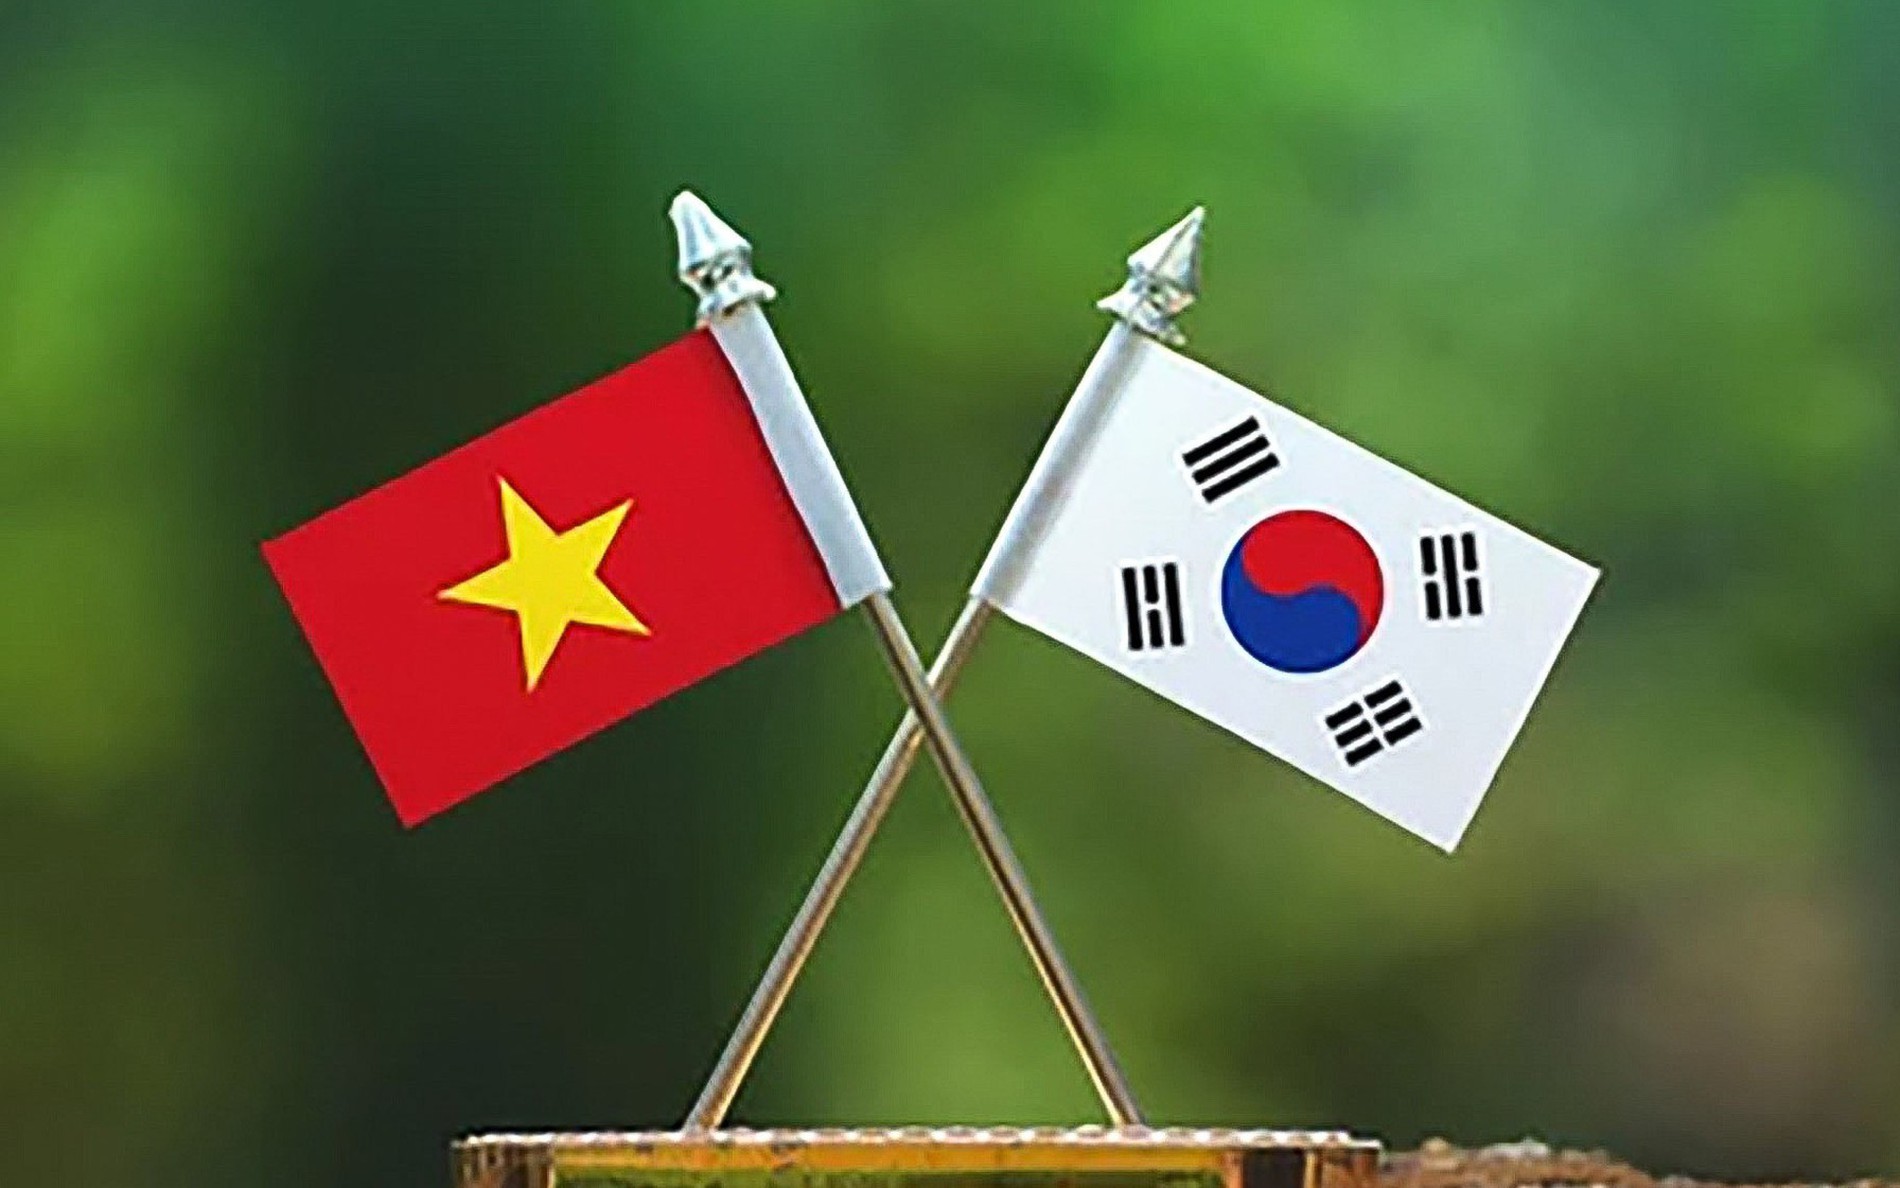 Quan hệ Việt Nam - Hàn Quốc: Mối quan hệ Việt Nam - Hàn Quốc từ lâu đã được thiết lập và phát triển vững chắc. Những hình ảnh về quan hệ này sẽ khiến bạn ấm lòng và tin rằng chúng ta đang hướng tới một tương lai tốt đẹp và bền vững.